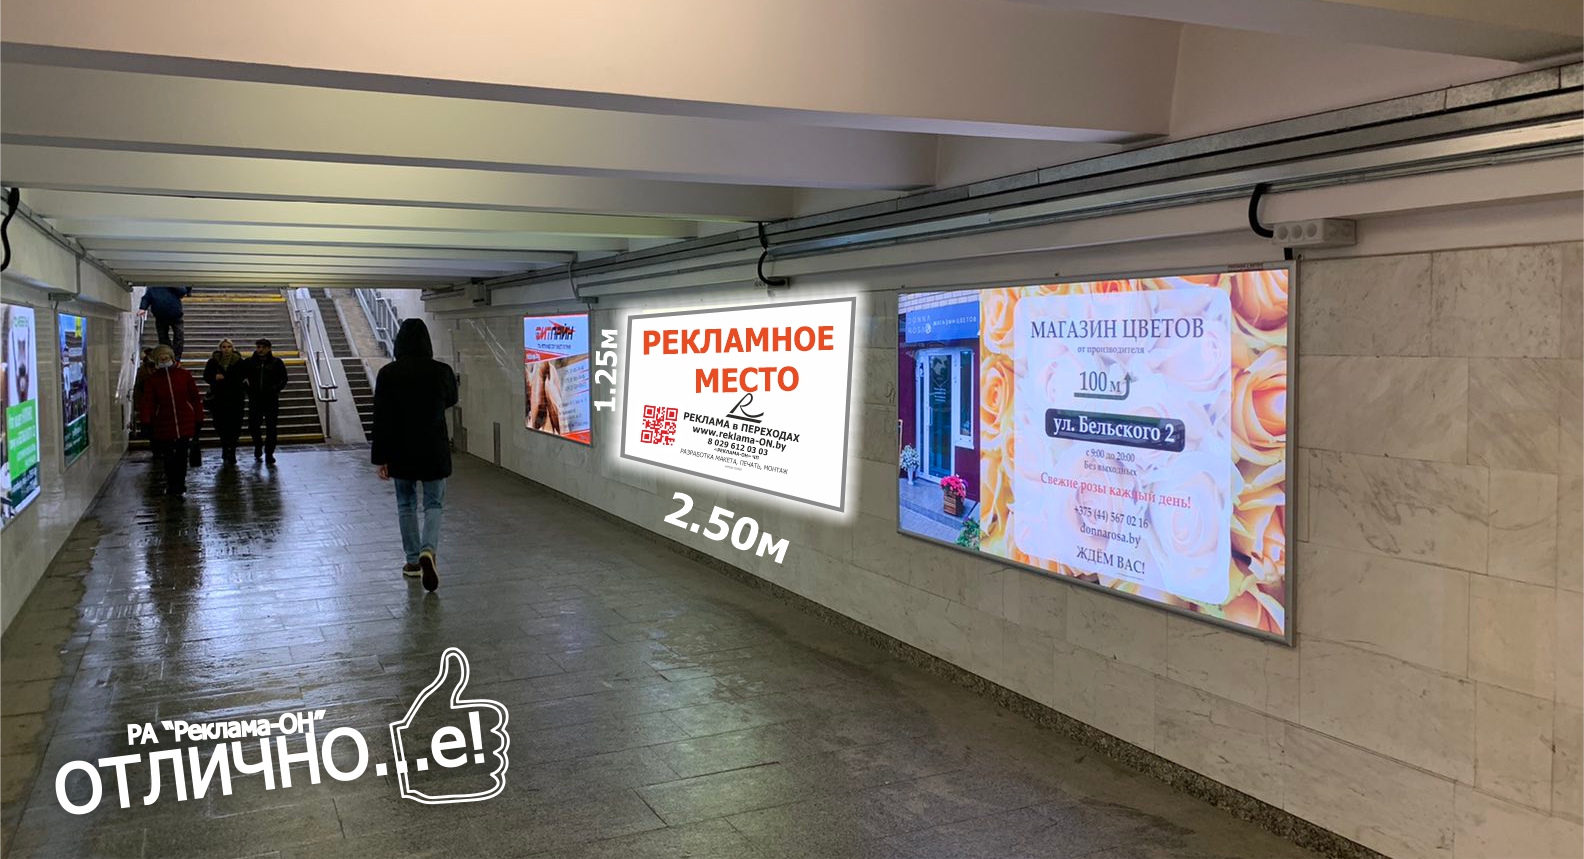 Ультраяркий световой лайтбокс на станции метро Спортивная (переход) reklama-on.by